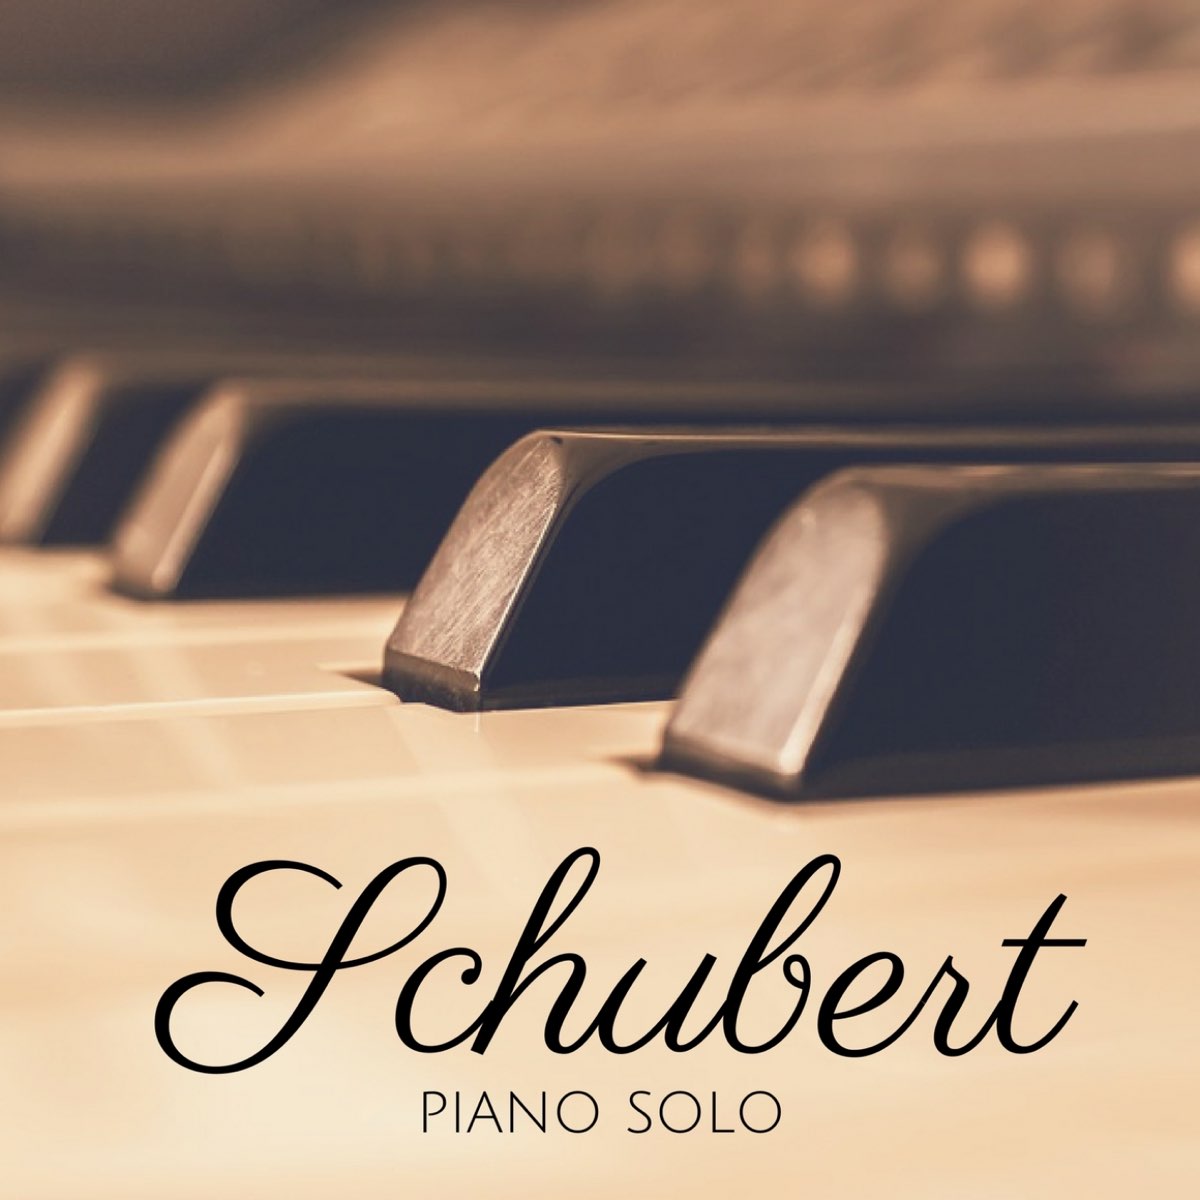 Schubert: Piano Solo – Album par Carlo Balzaretti & Giovanni Umberto Battel  – Apple Music